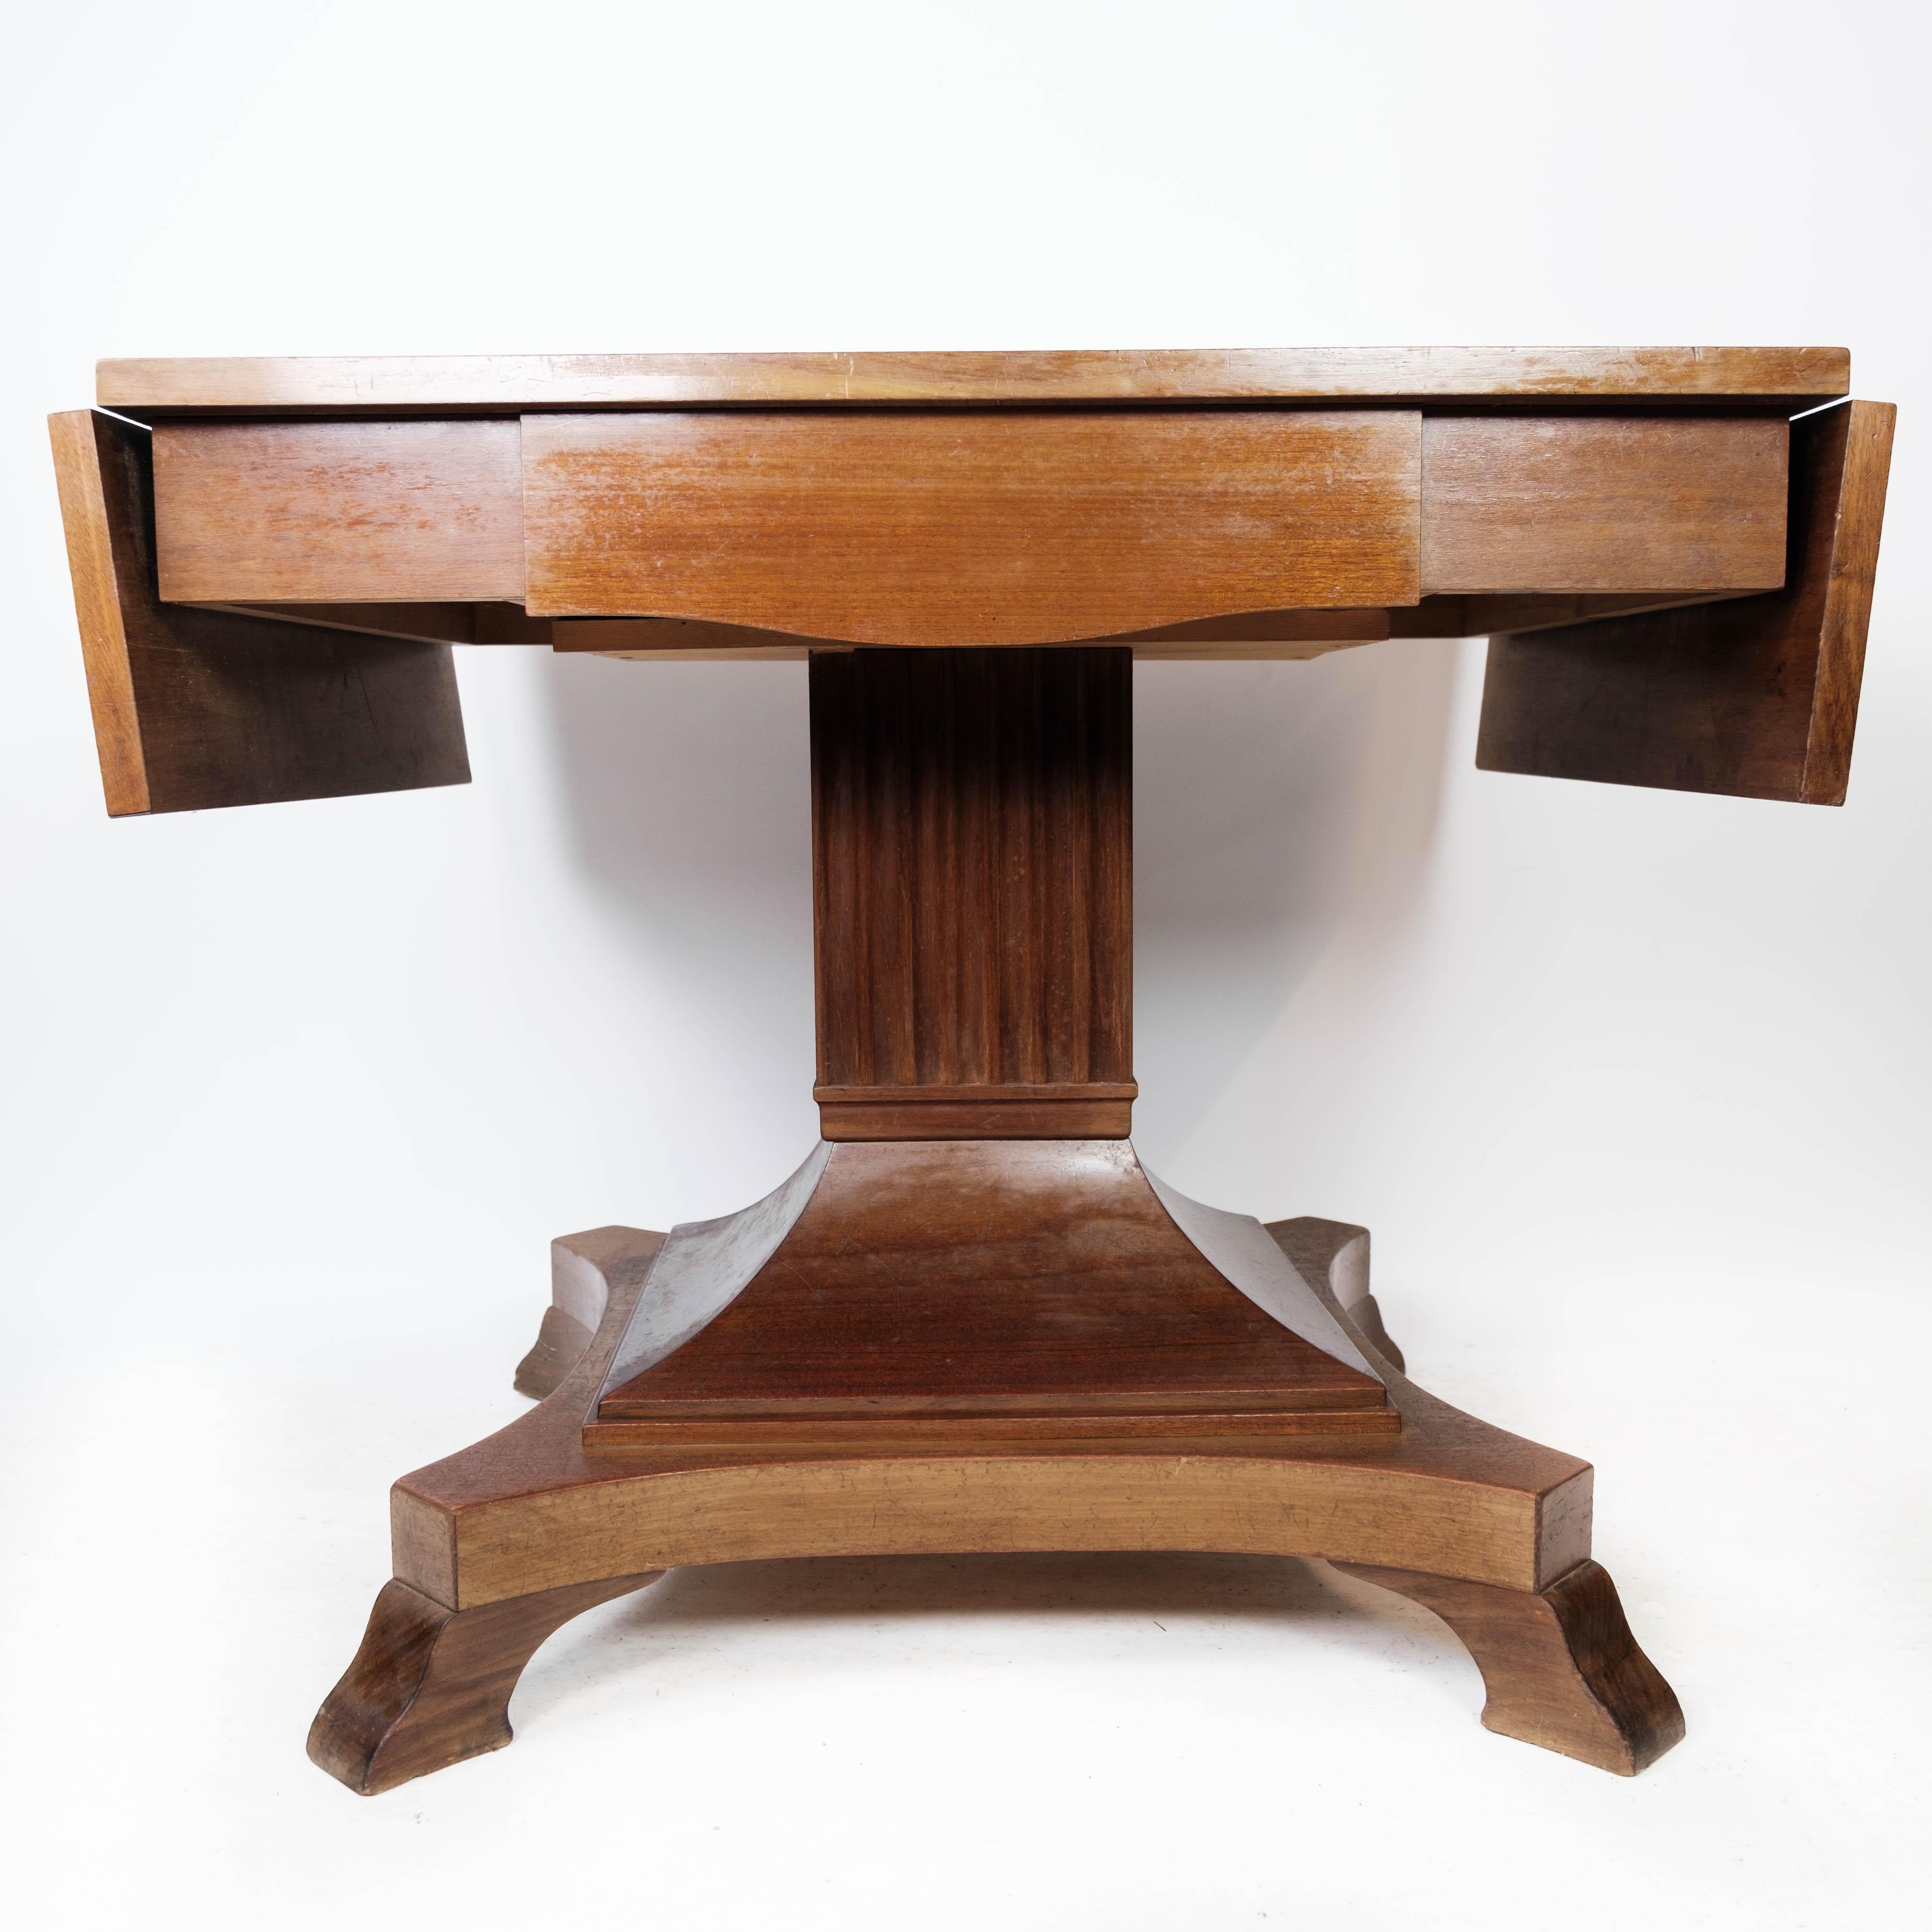 
La table à manger en acajou des années 1920 est un meuble intemporel qui respire l'élégance et la sophistication. Fabriquée en bois d'acajou de haute qualité, cette table présente un aspect riche et luxueux qui ajoute une touche de charme classique